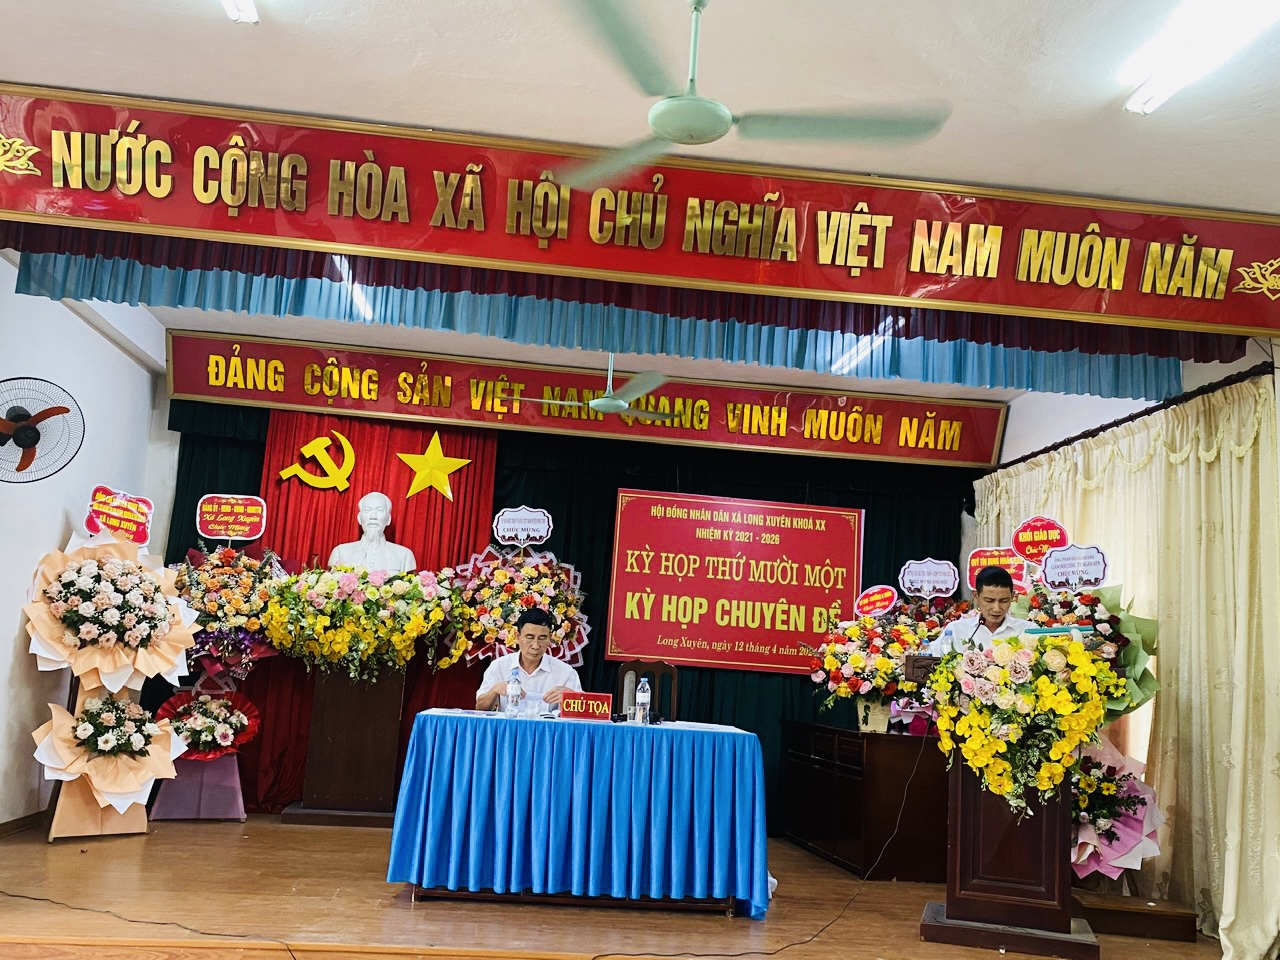 Kỳ họp thứ 11-Kỳ họp chuyên đề HĐND xã Long Xuyên khoá XX, nhiệm kỳ 2021-2026.